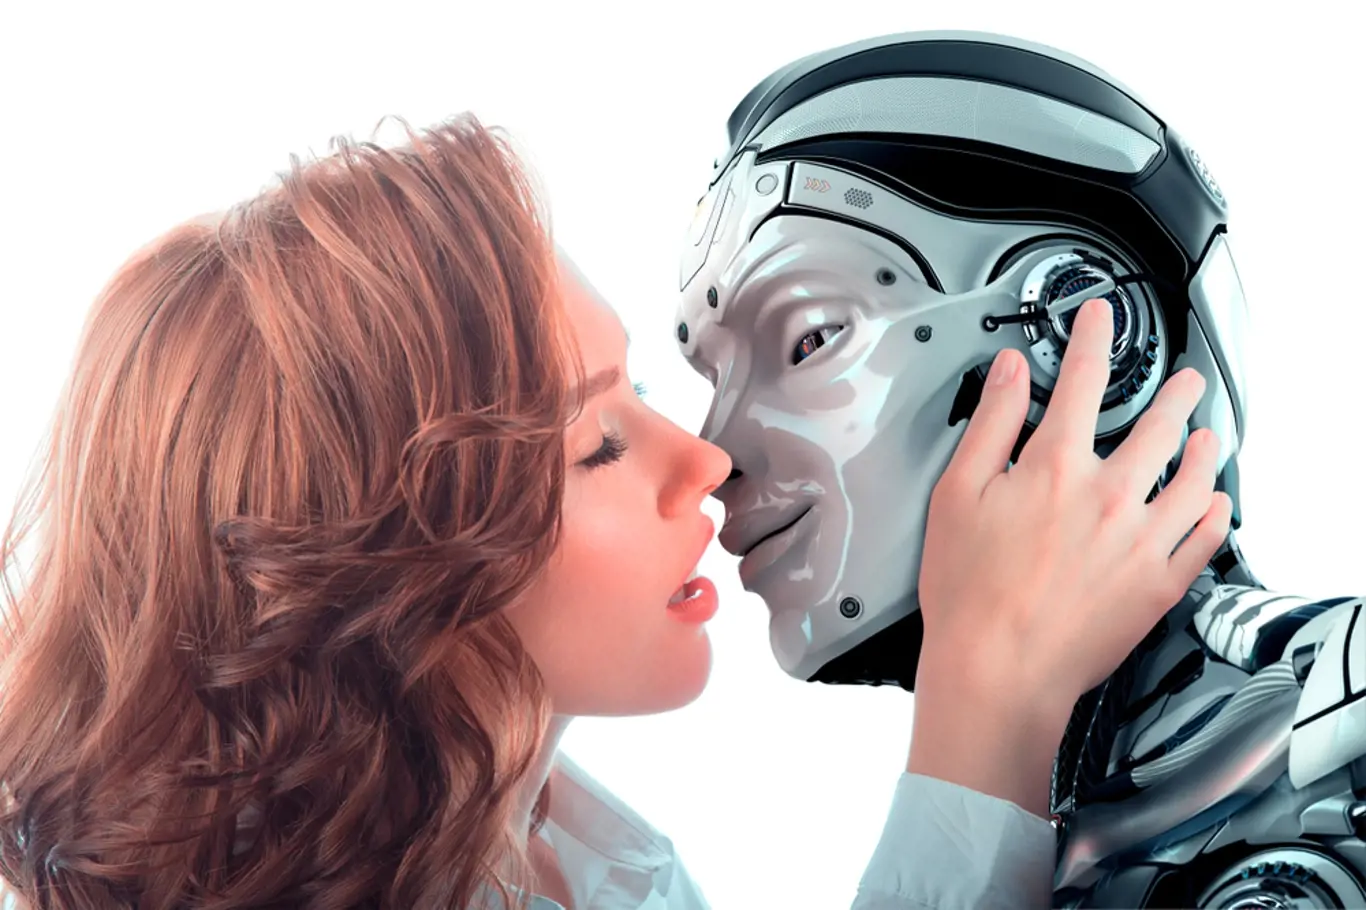 Žena líbá robota